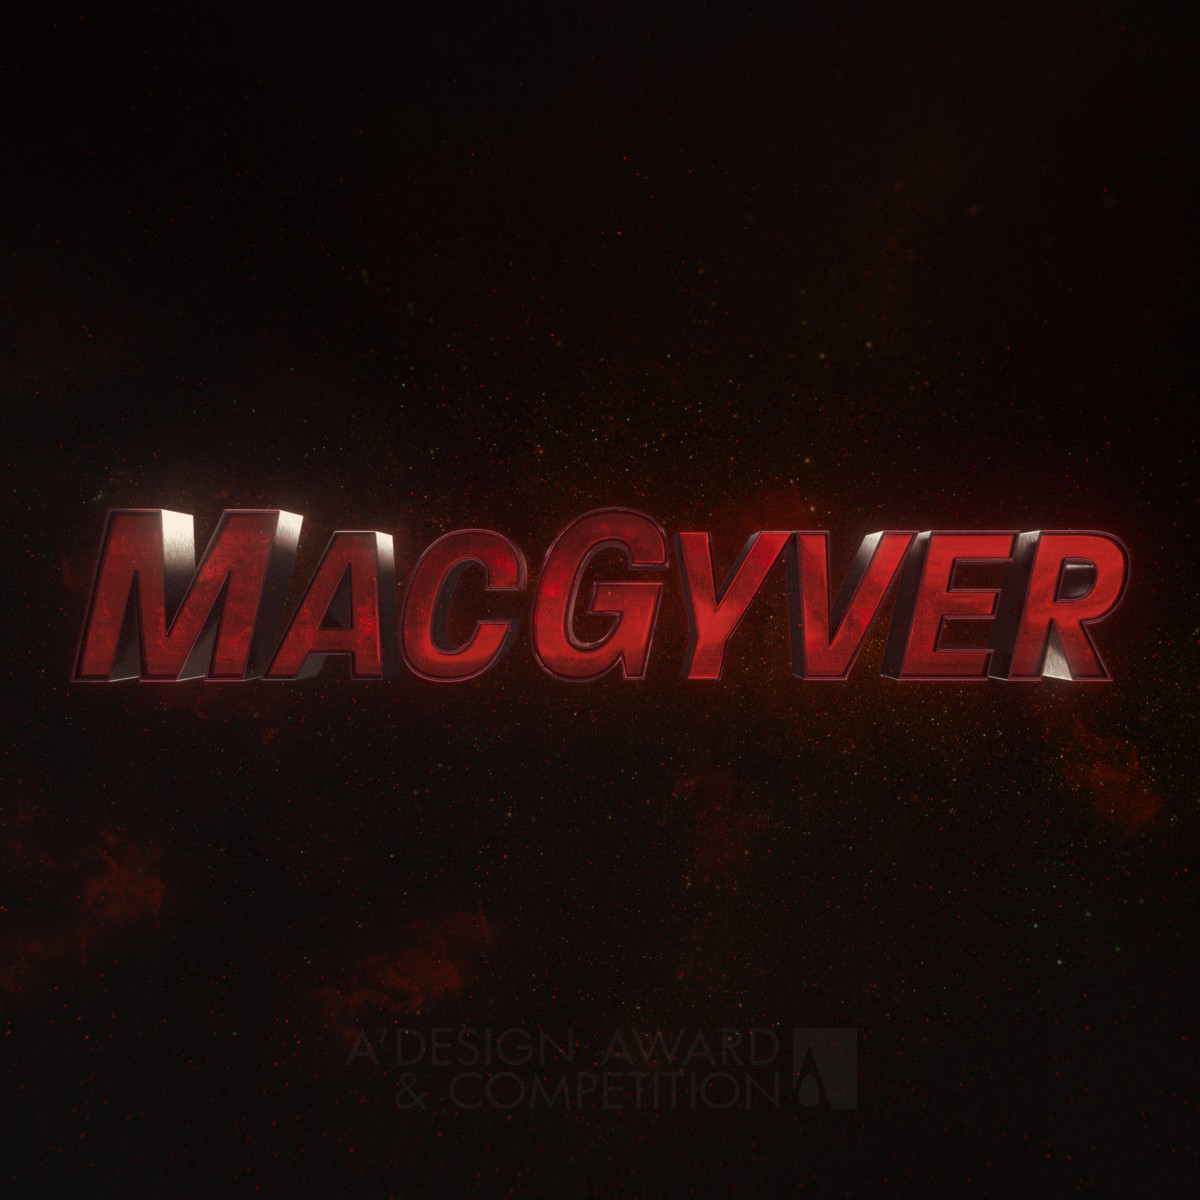 Mac Gyver Season 4 Main Titles by David Wave